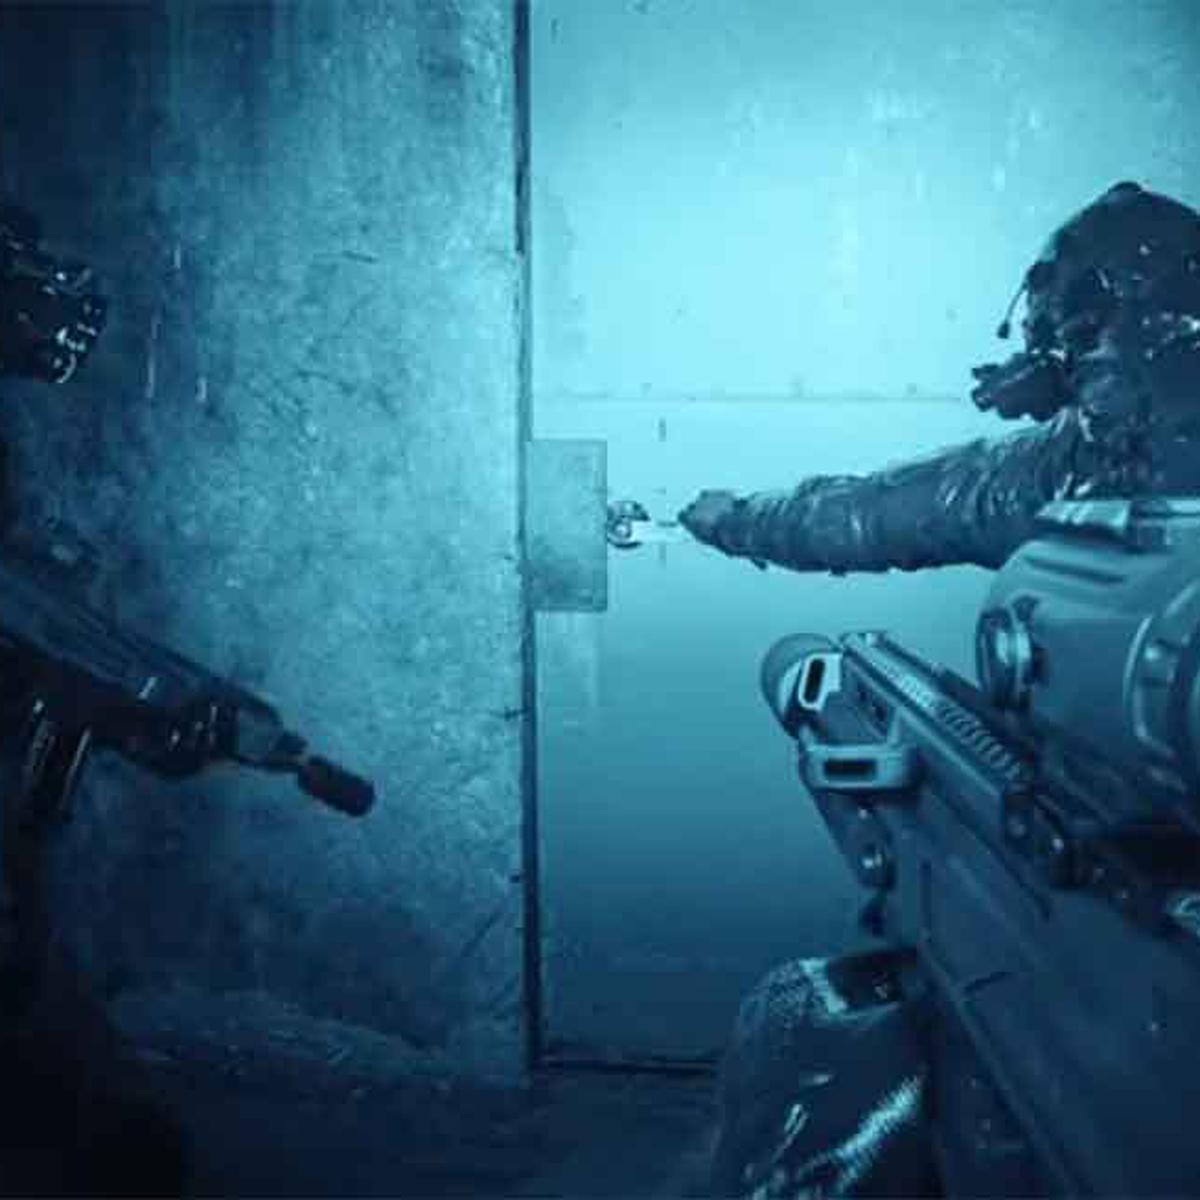 Call of Duty: Modern Warfare 3 – Modo Campanha (PS5), Bit-nálise